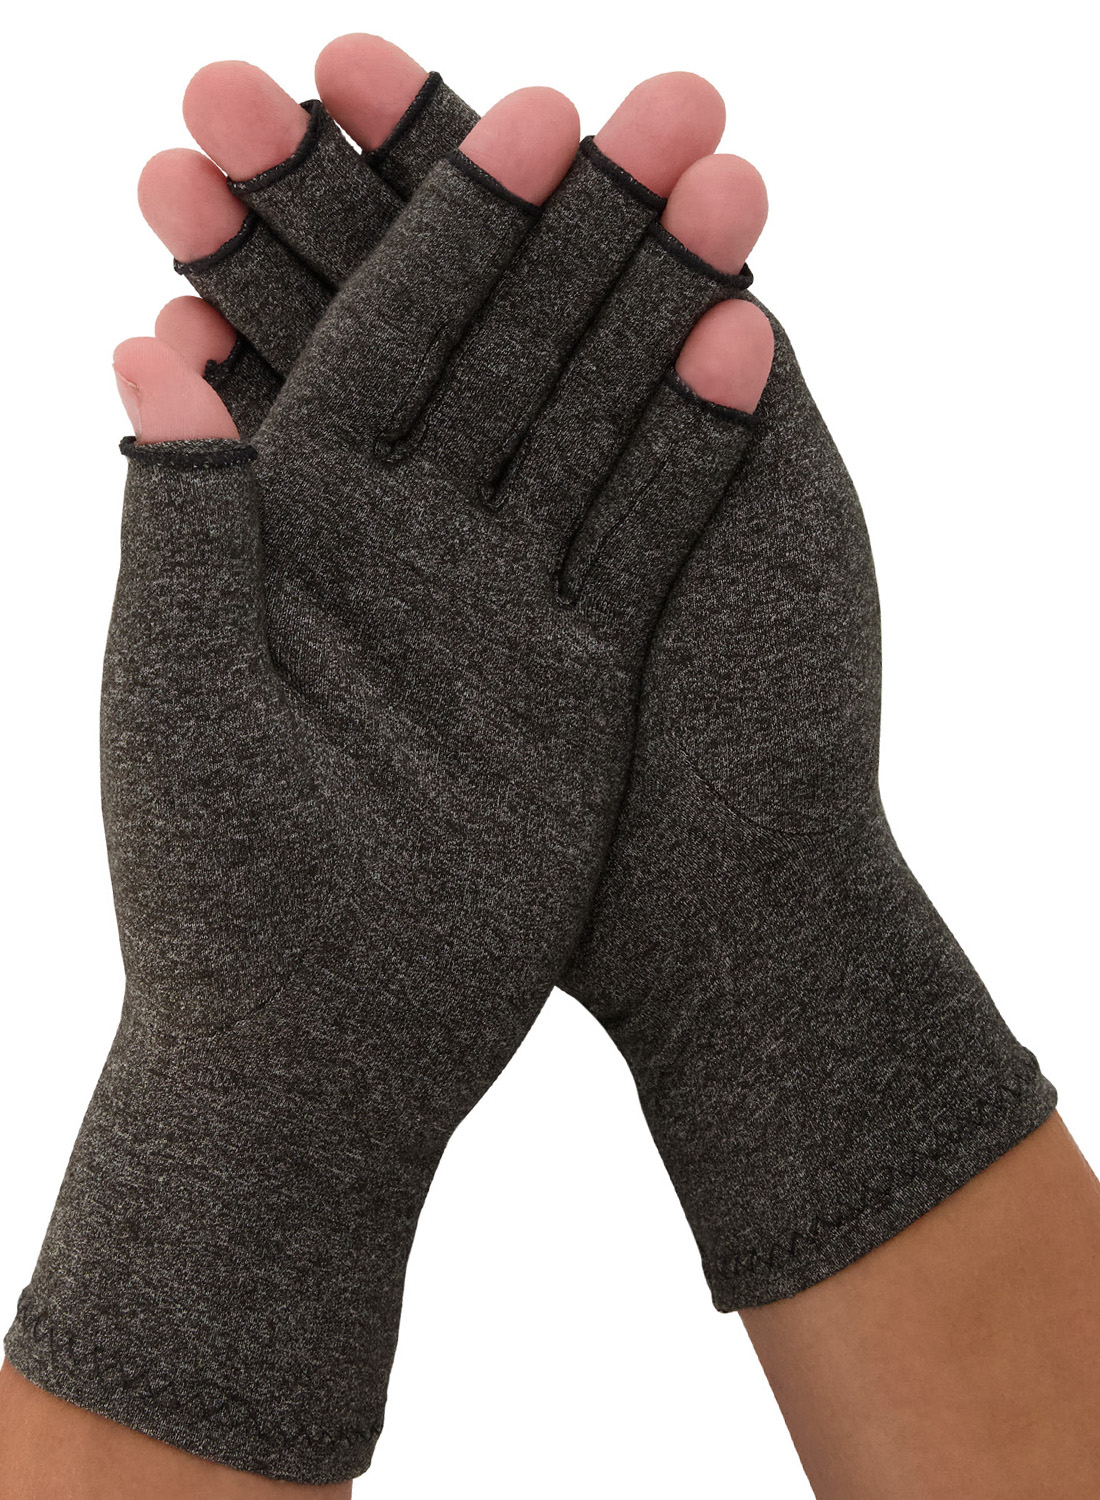 Dunimed Artrose / Reuma Handschoenen (in zwart en beige) kopen